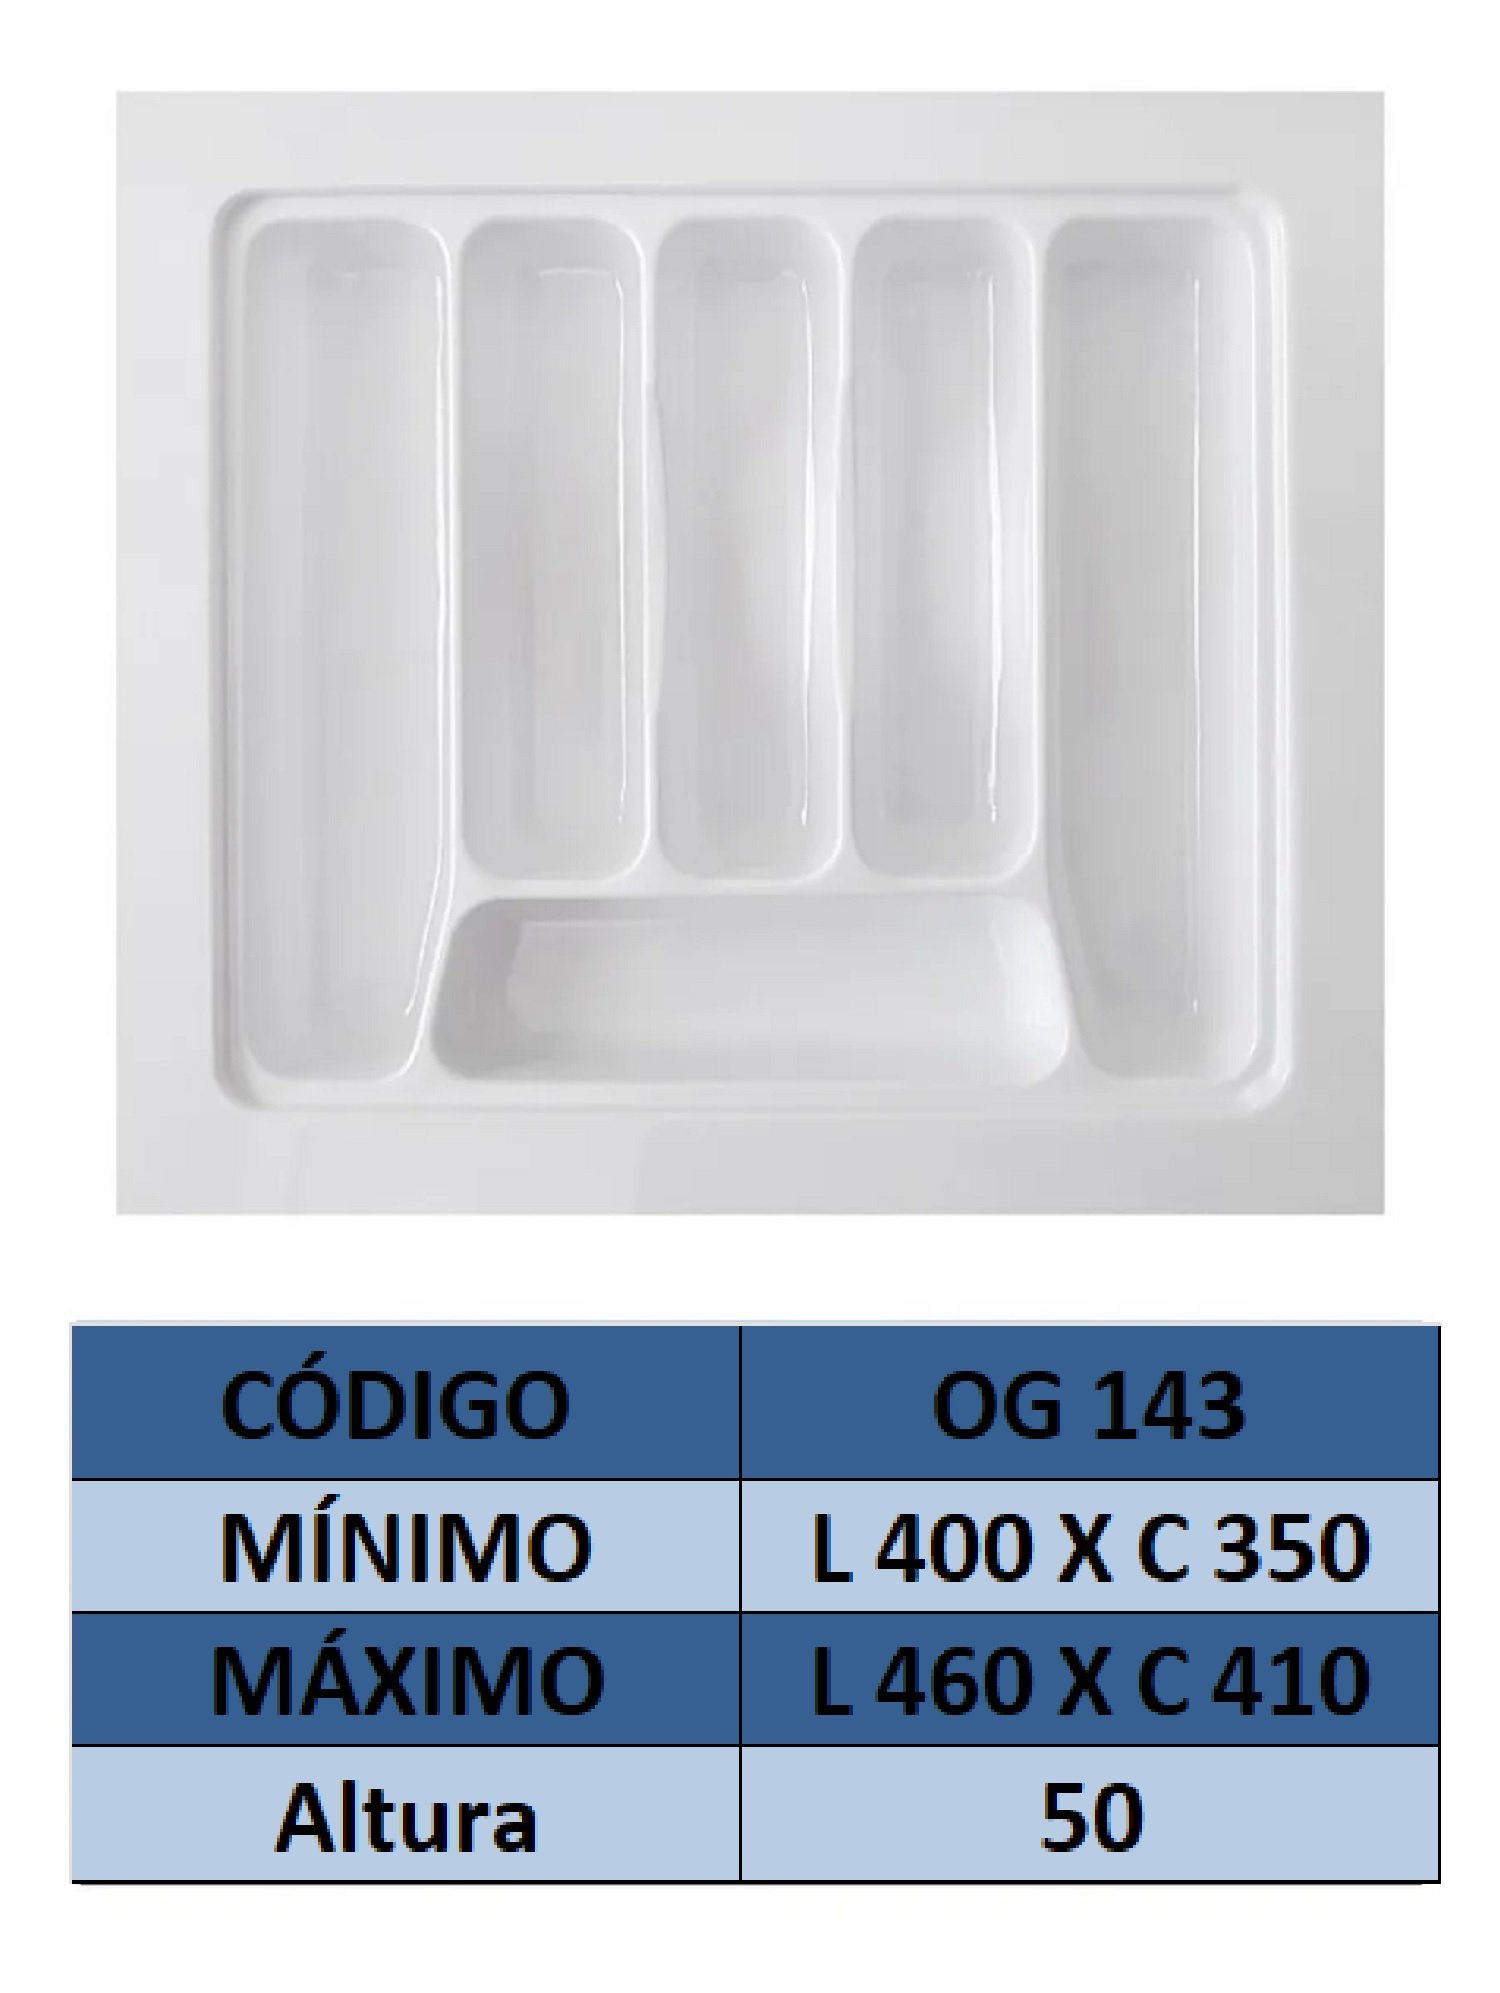 Organizador de talher ajustável Medidas máximas: 46cm X 41cm) OG-143 - 3